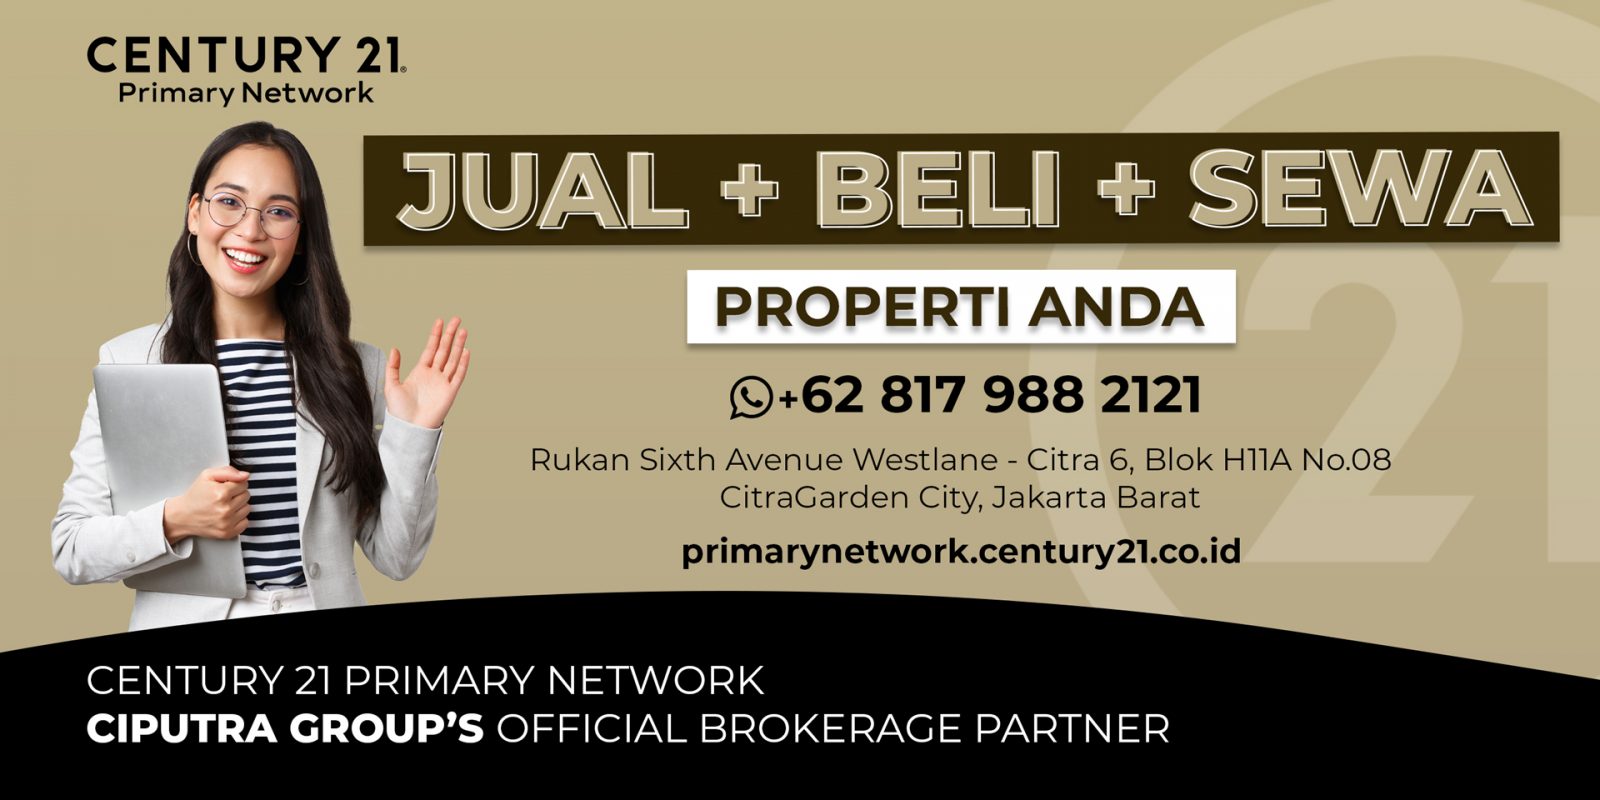 Segera hadir memenuhi segala properti yang telah dan ingin Anda miliki, Century 21 Primary Network – Ciputra Group’s Official Brokerage Partner